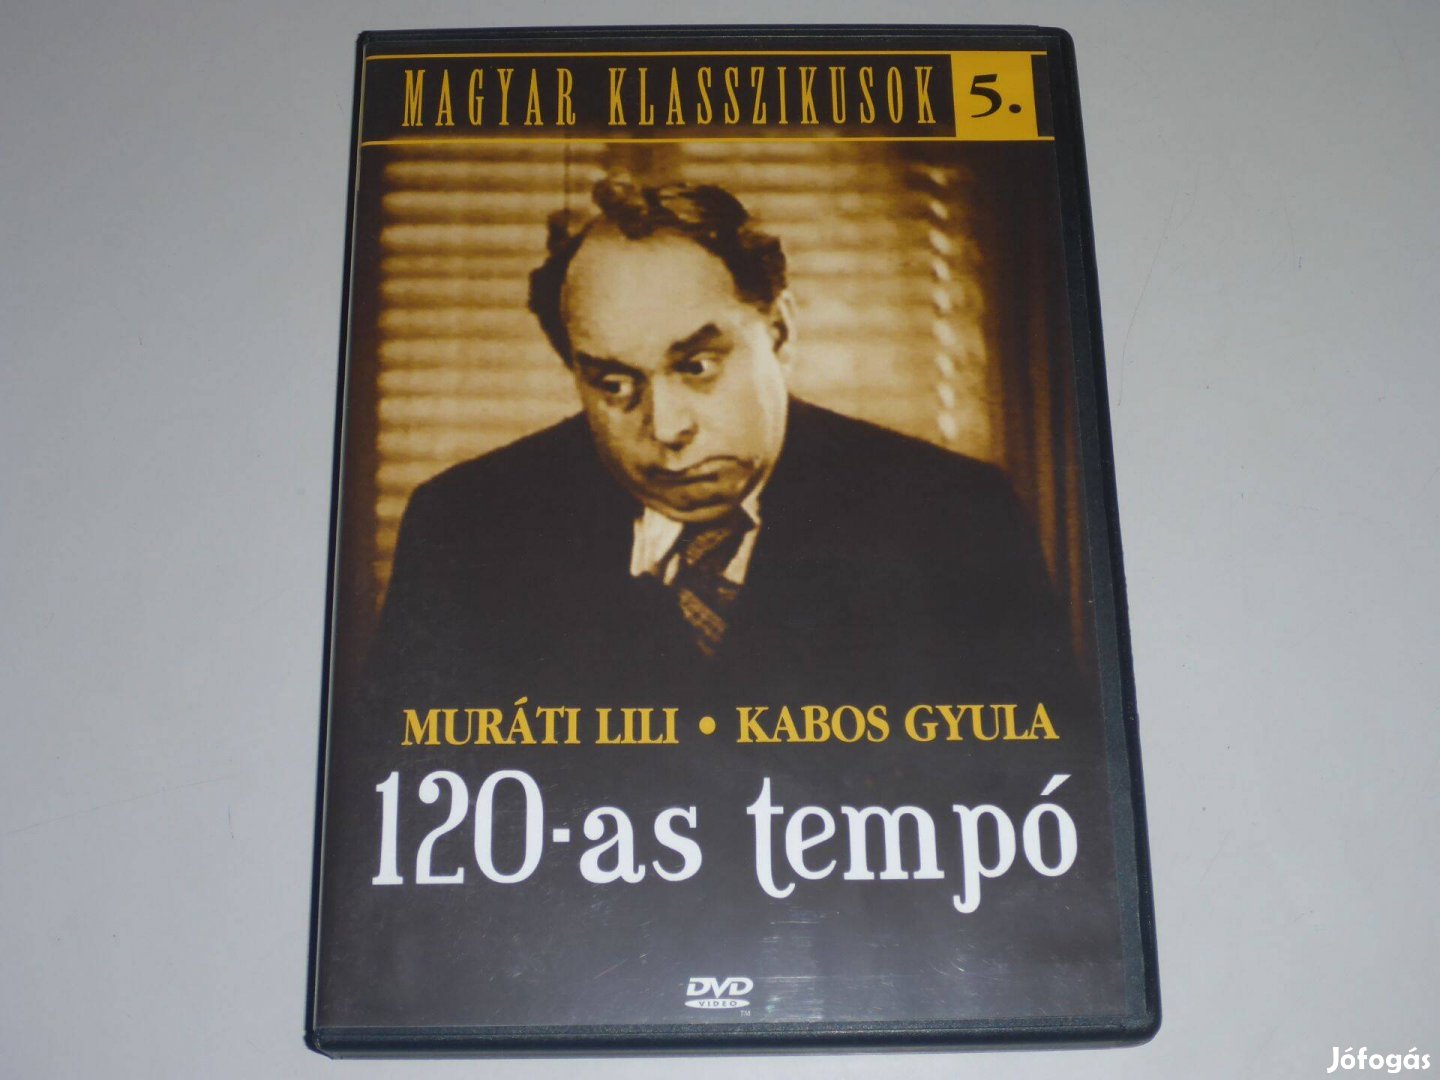 Magyar klasszikusok 5. - 120-as tempó DVD film "